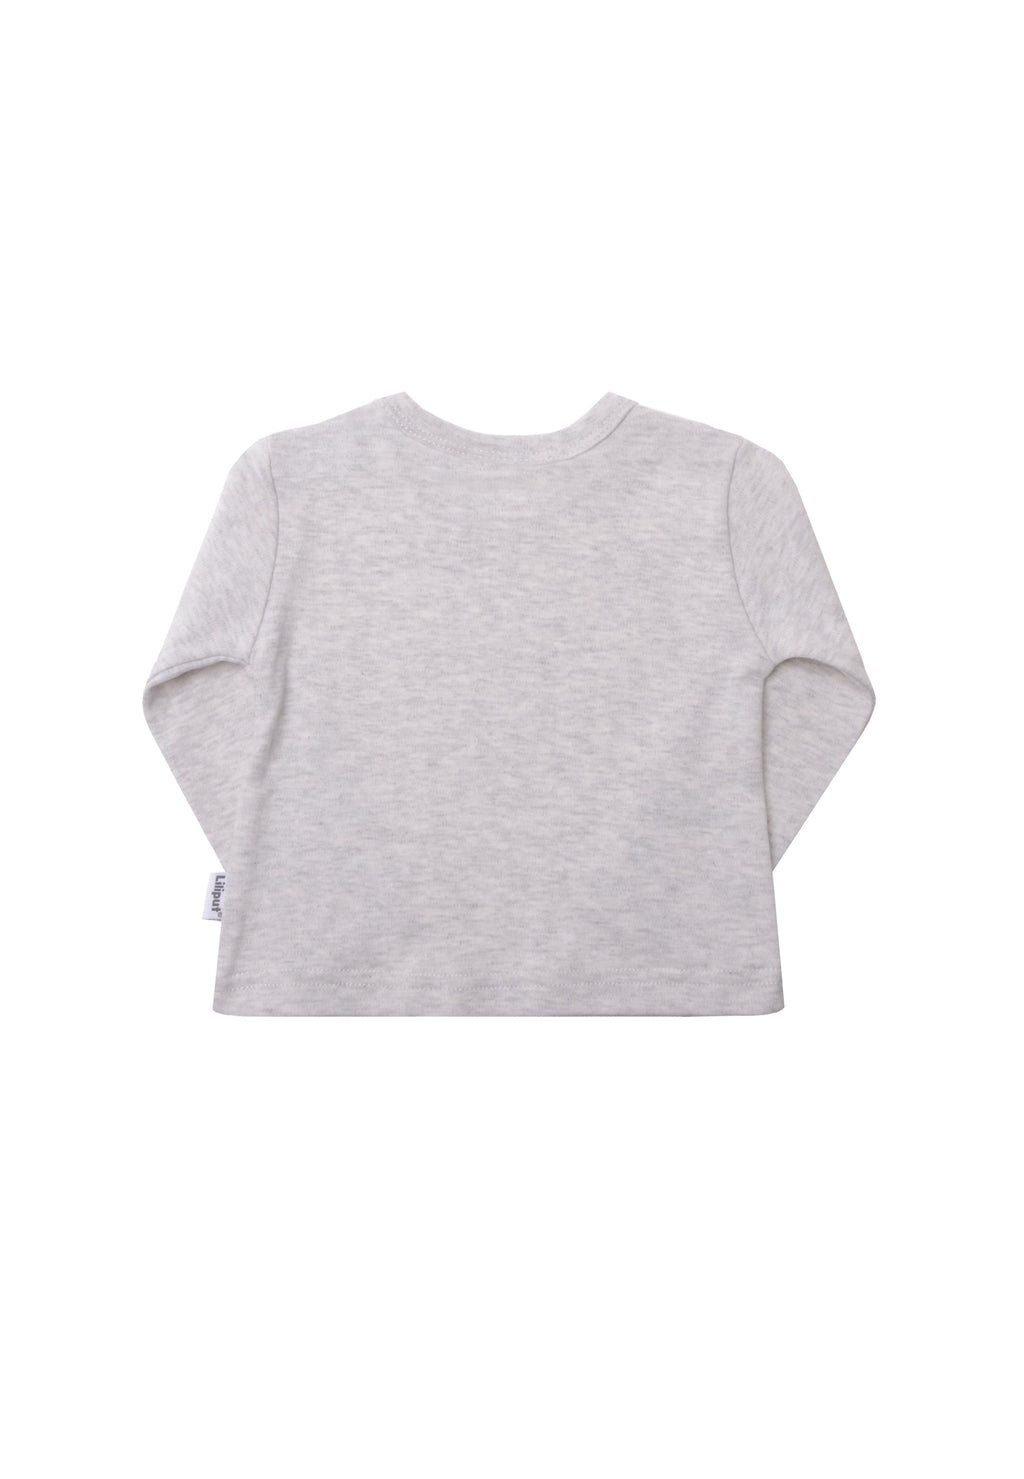 3er Pack Langarmshirts für Babys und Kleinkinder in den Farben schilf, ecru und grau melange.